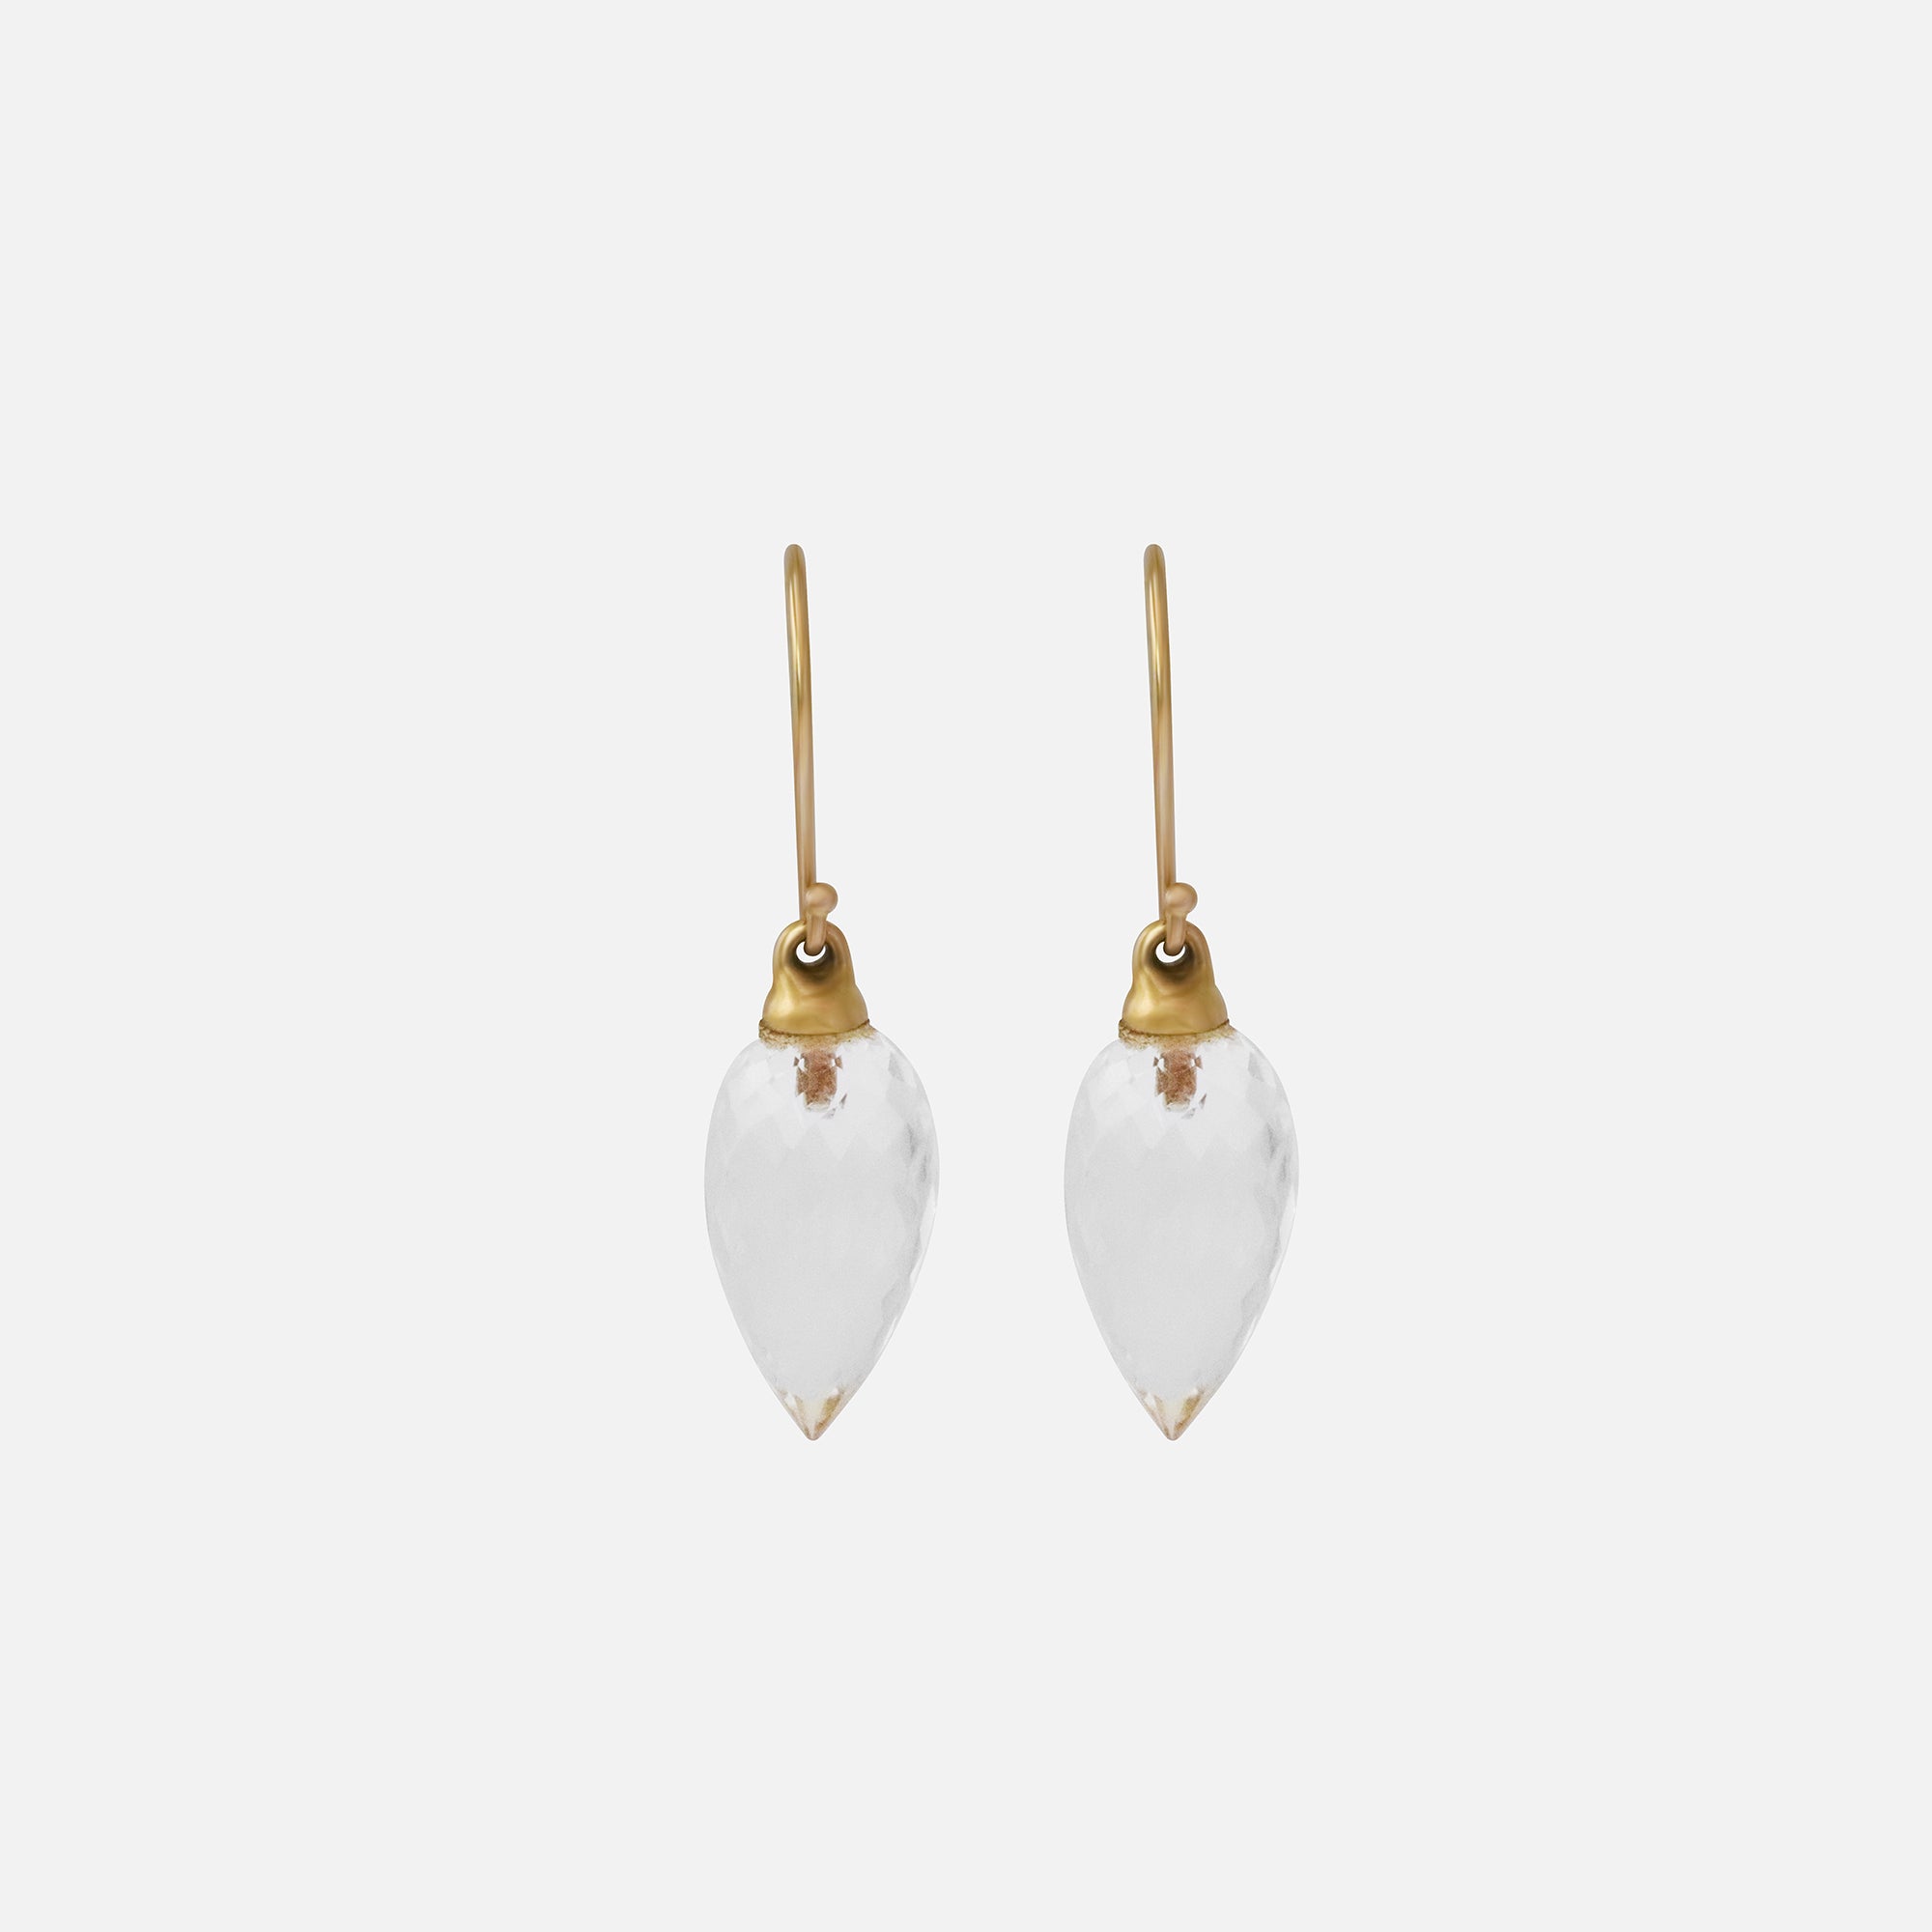 Crystal Earrings By Tricia Kirkland in earrings Category